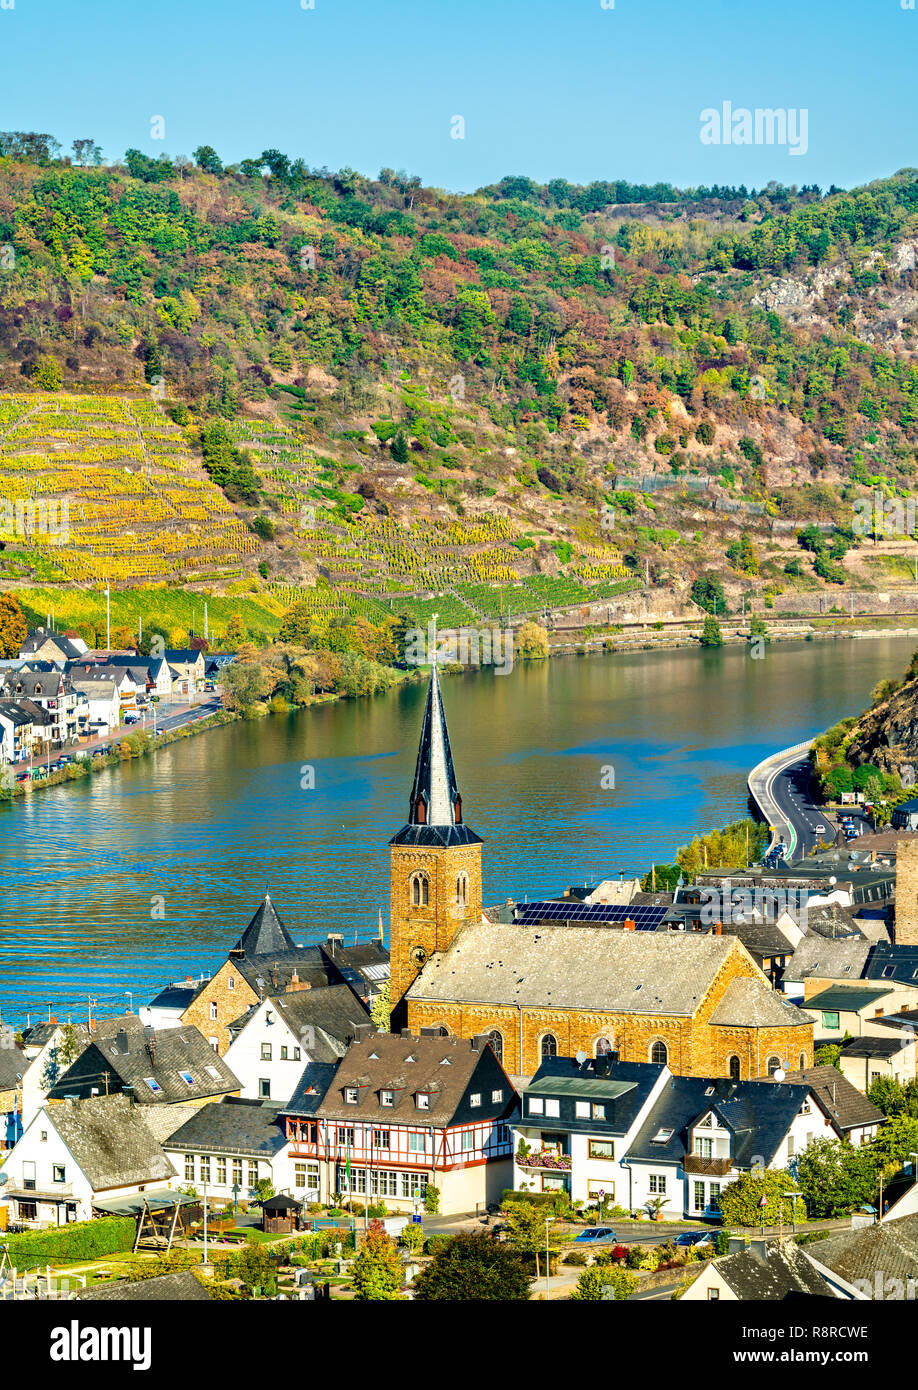 Alken ville sur la Moselle en Rhénanie-Palatinat, Allemagne Banque D'Images